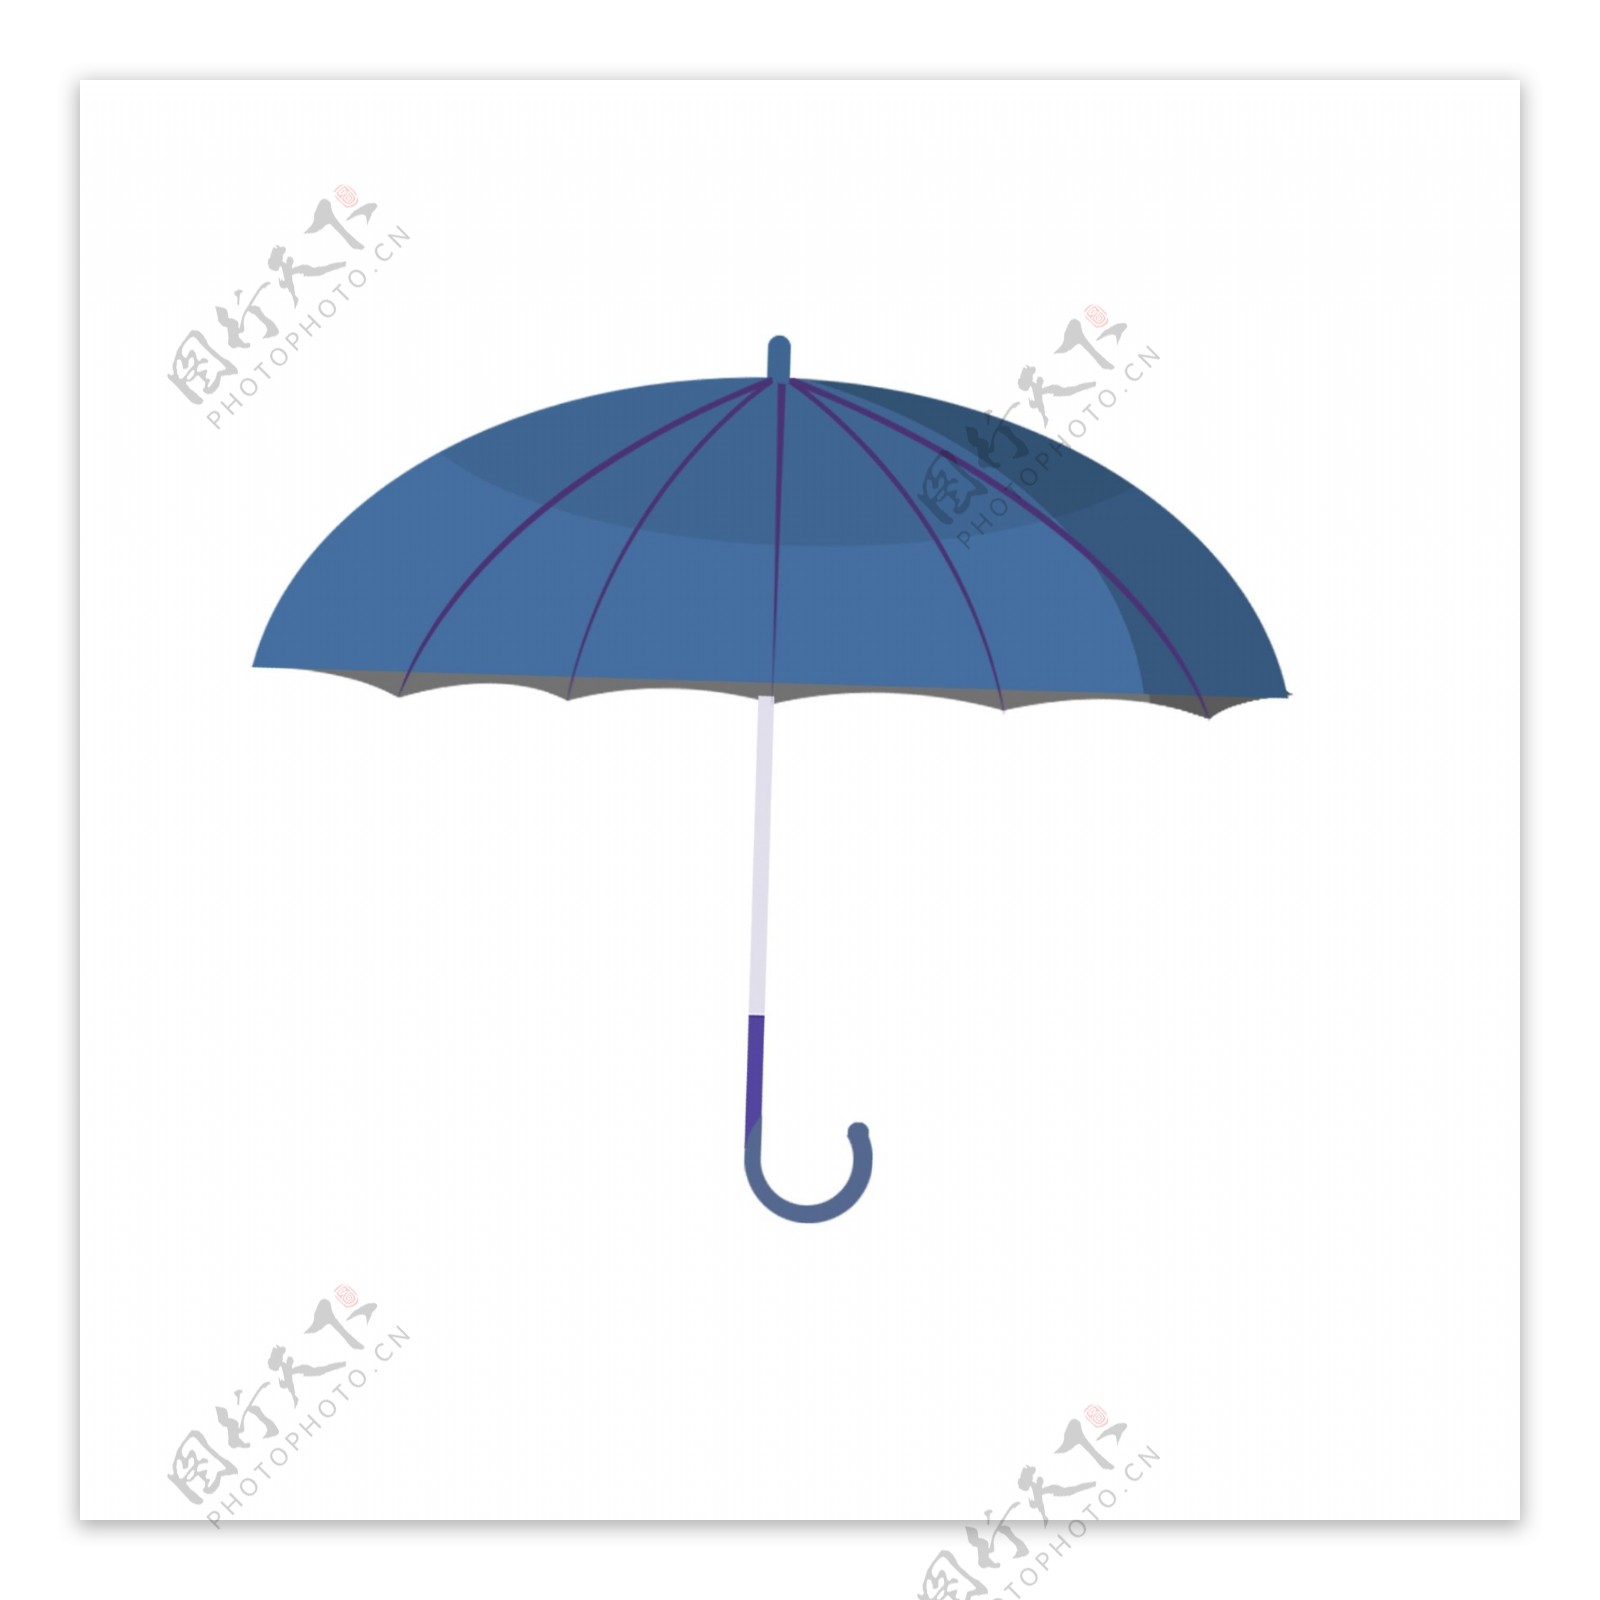 蓝色雨伞图案元素可商用